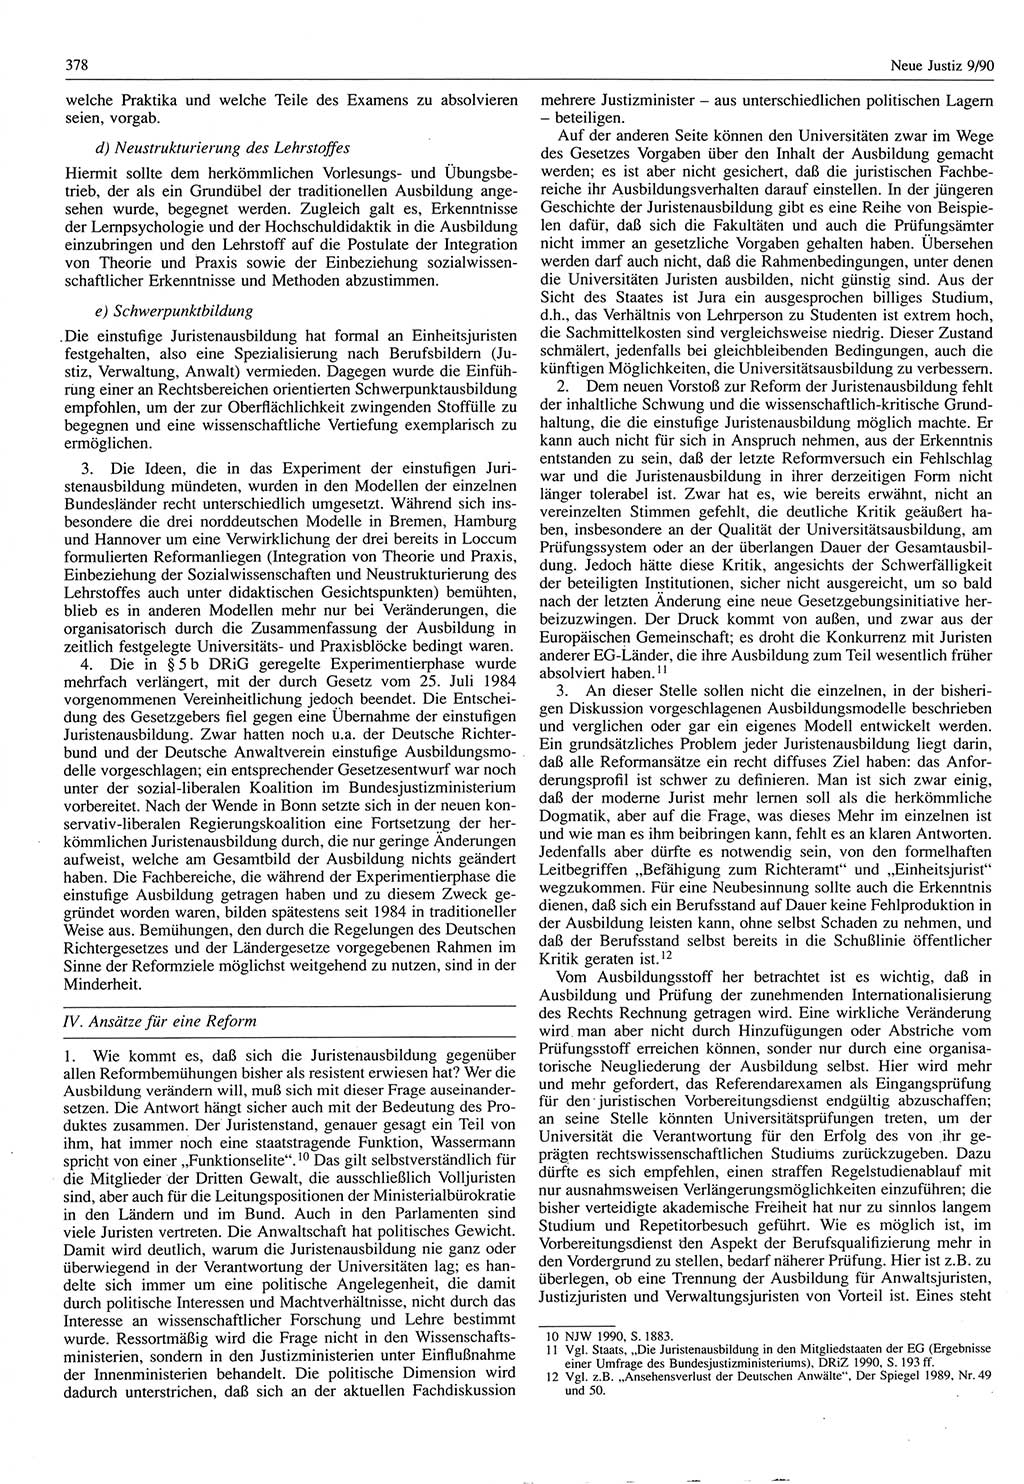 Neue Justiz (NJ), Zeitschrift für Rechtsetzung und Rechtsanwendung [Deutsche Demokratische Republik (DDR)], 44. Jahrgang 1990, Seite 378 (NJ DDR 1990, S. 378)